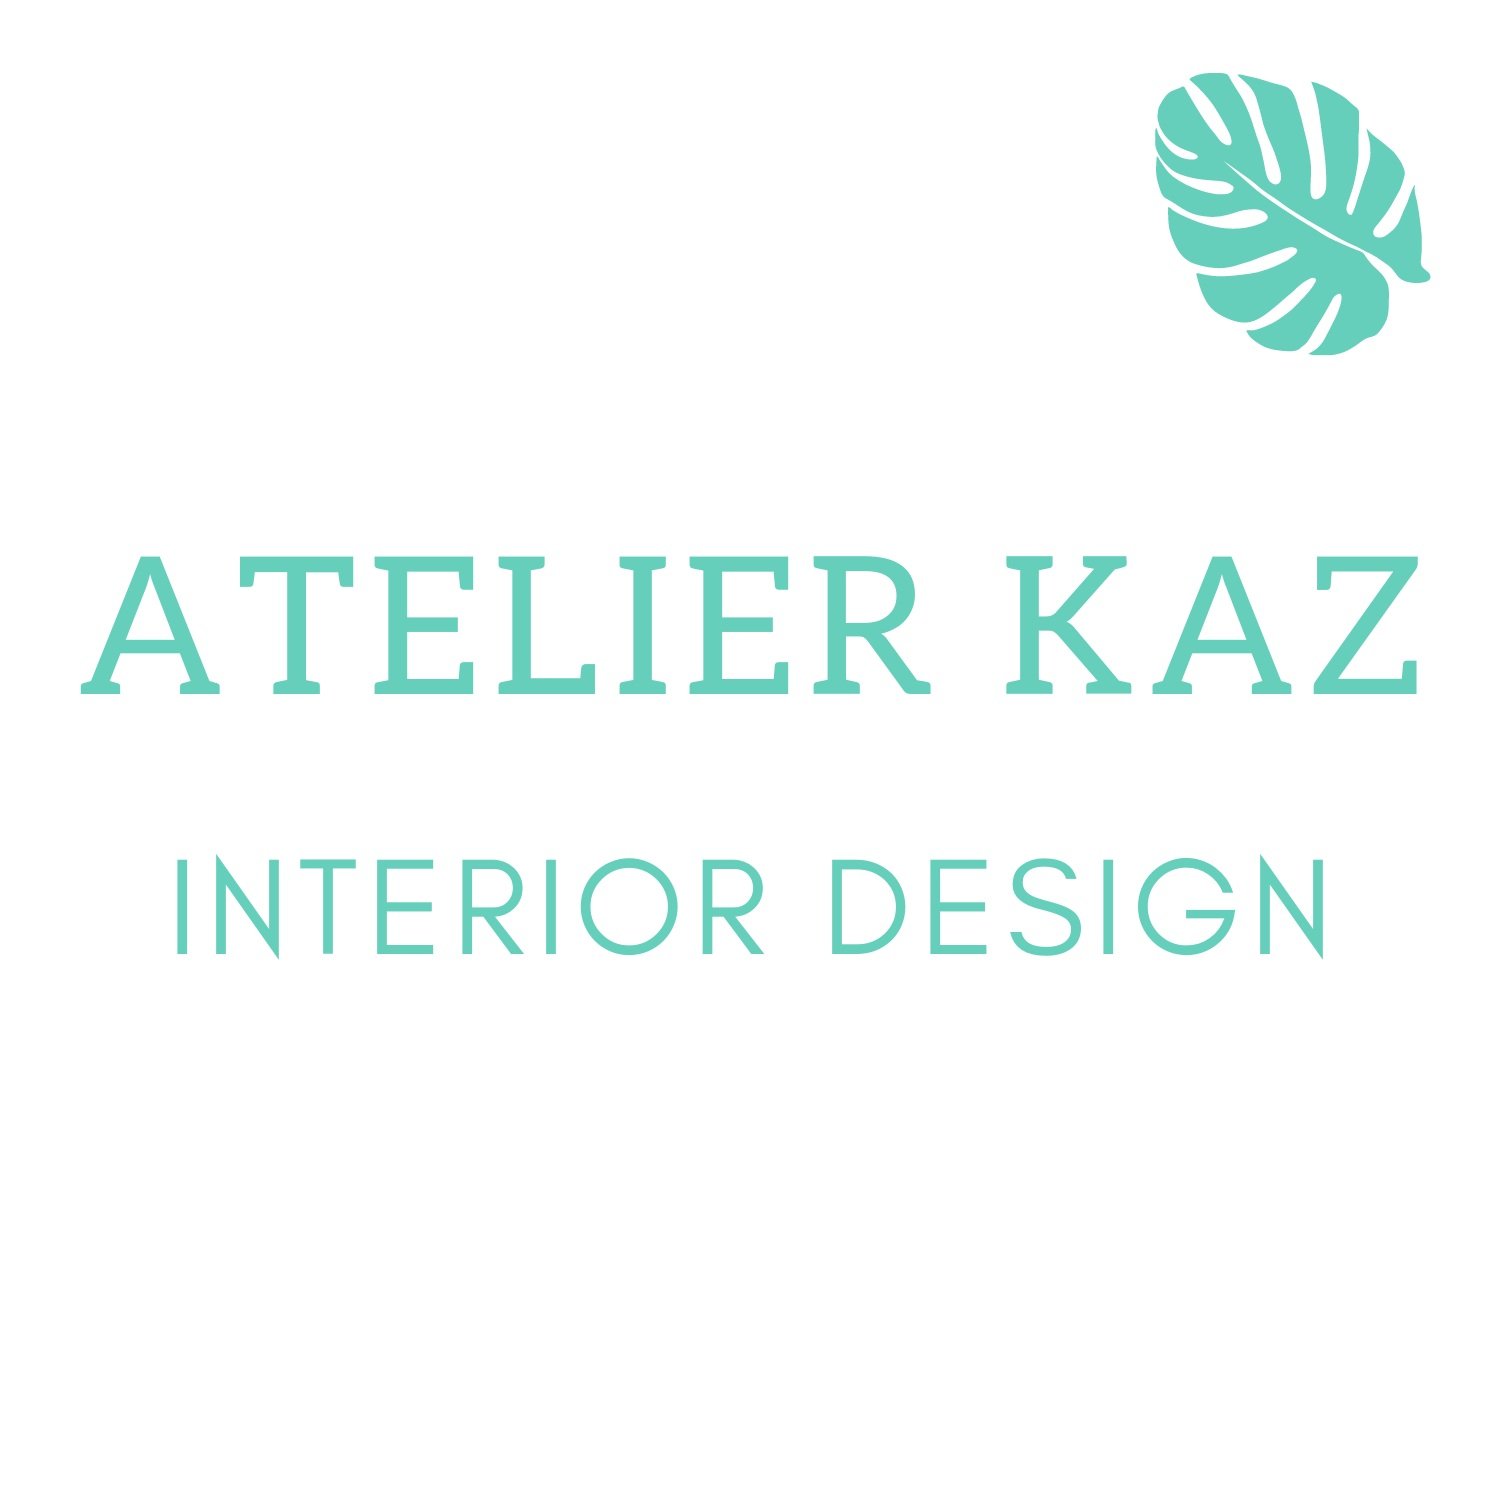 Atelier Kaz Interior Design